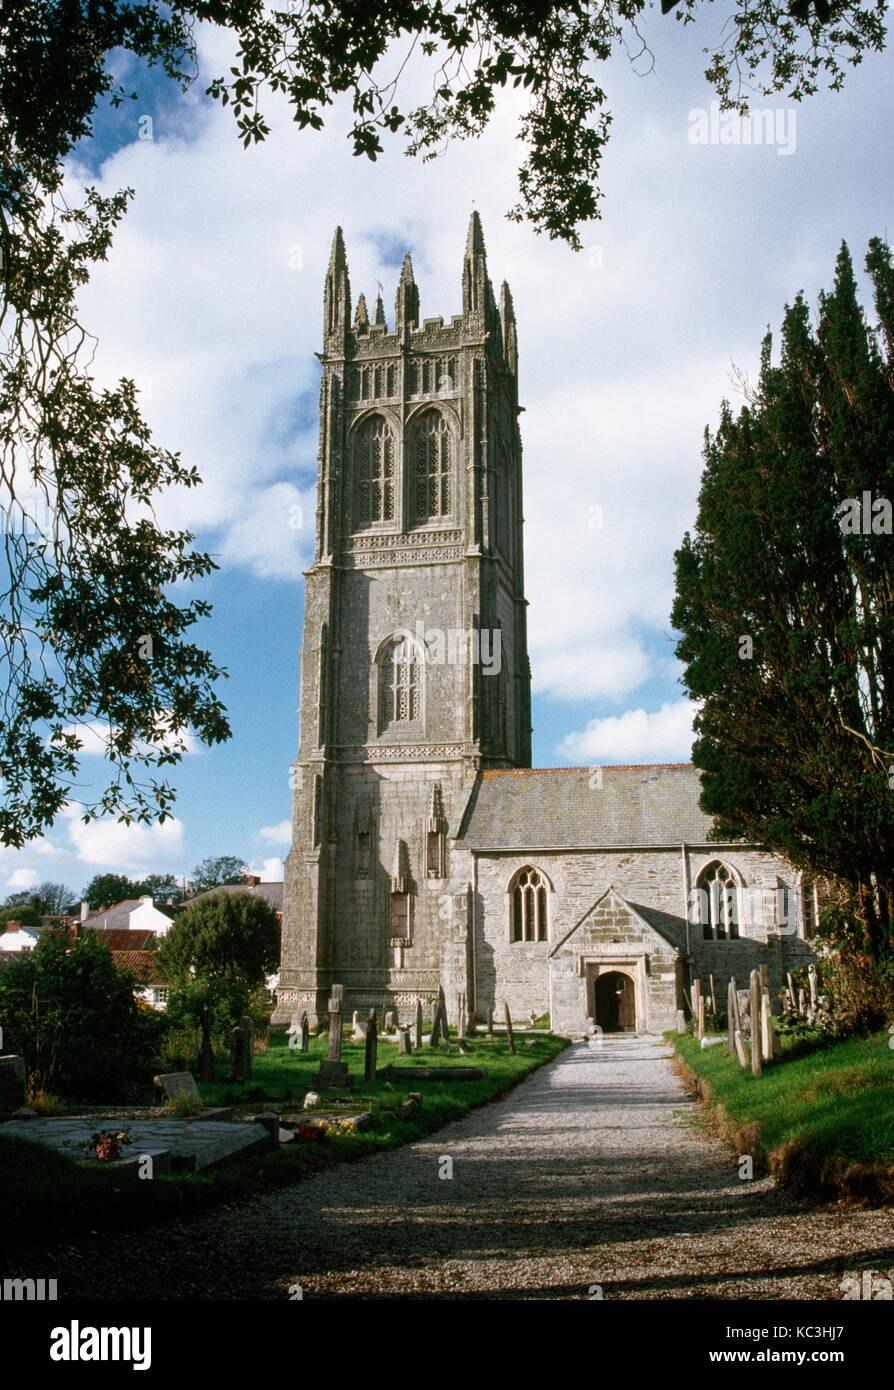 Probus st' church, Probus, près de Truro, Cornwall, Angleterre. plus haute et plus tard de la ville médiévale de cornish tours. Banque D'Images